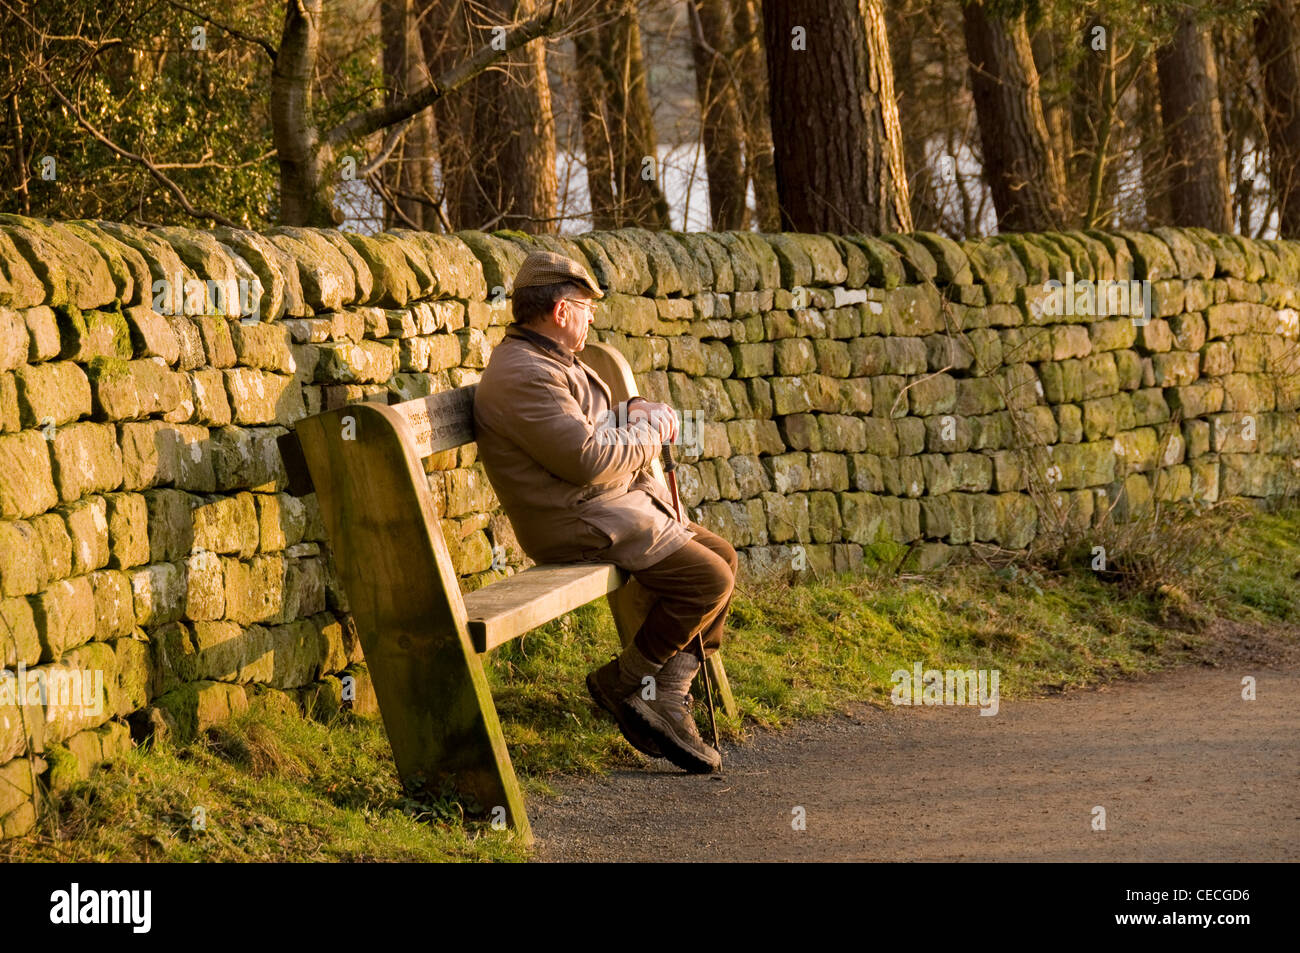 Man (Walker) assis sur la banquette en bois, le repos et la détente au calme endroit pittoresque ensoleillée (par mur en pierre et arbres) - Réservoir Swinsty, Yorkshire, FR, UK Banque D'Images